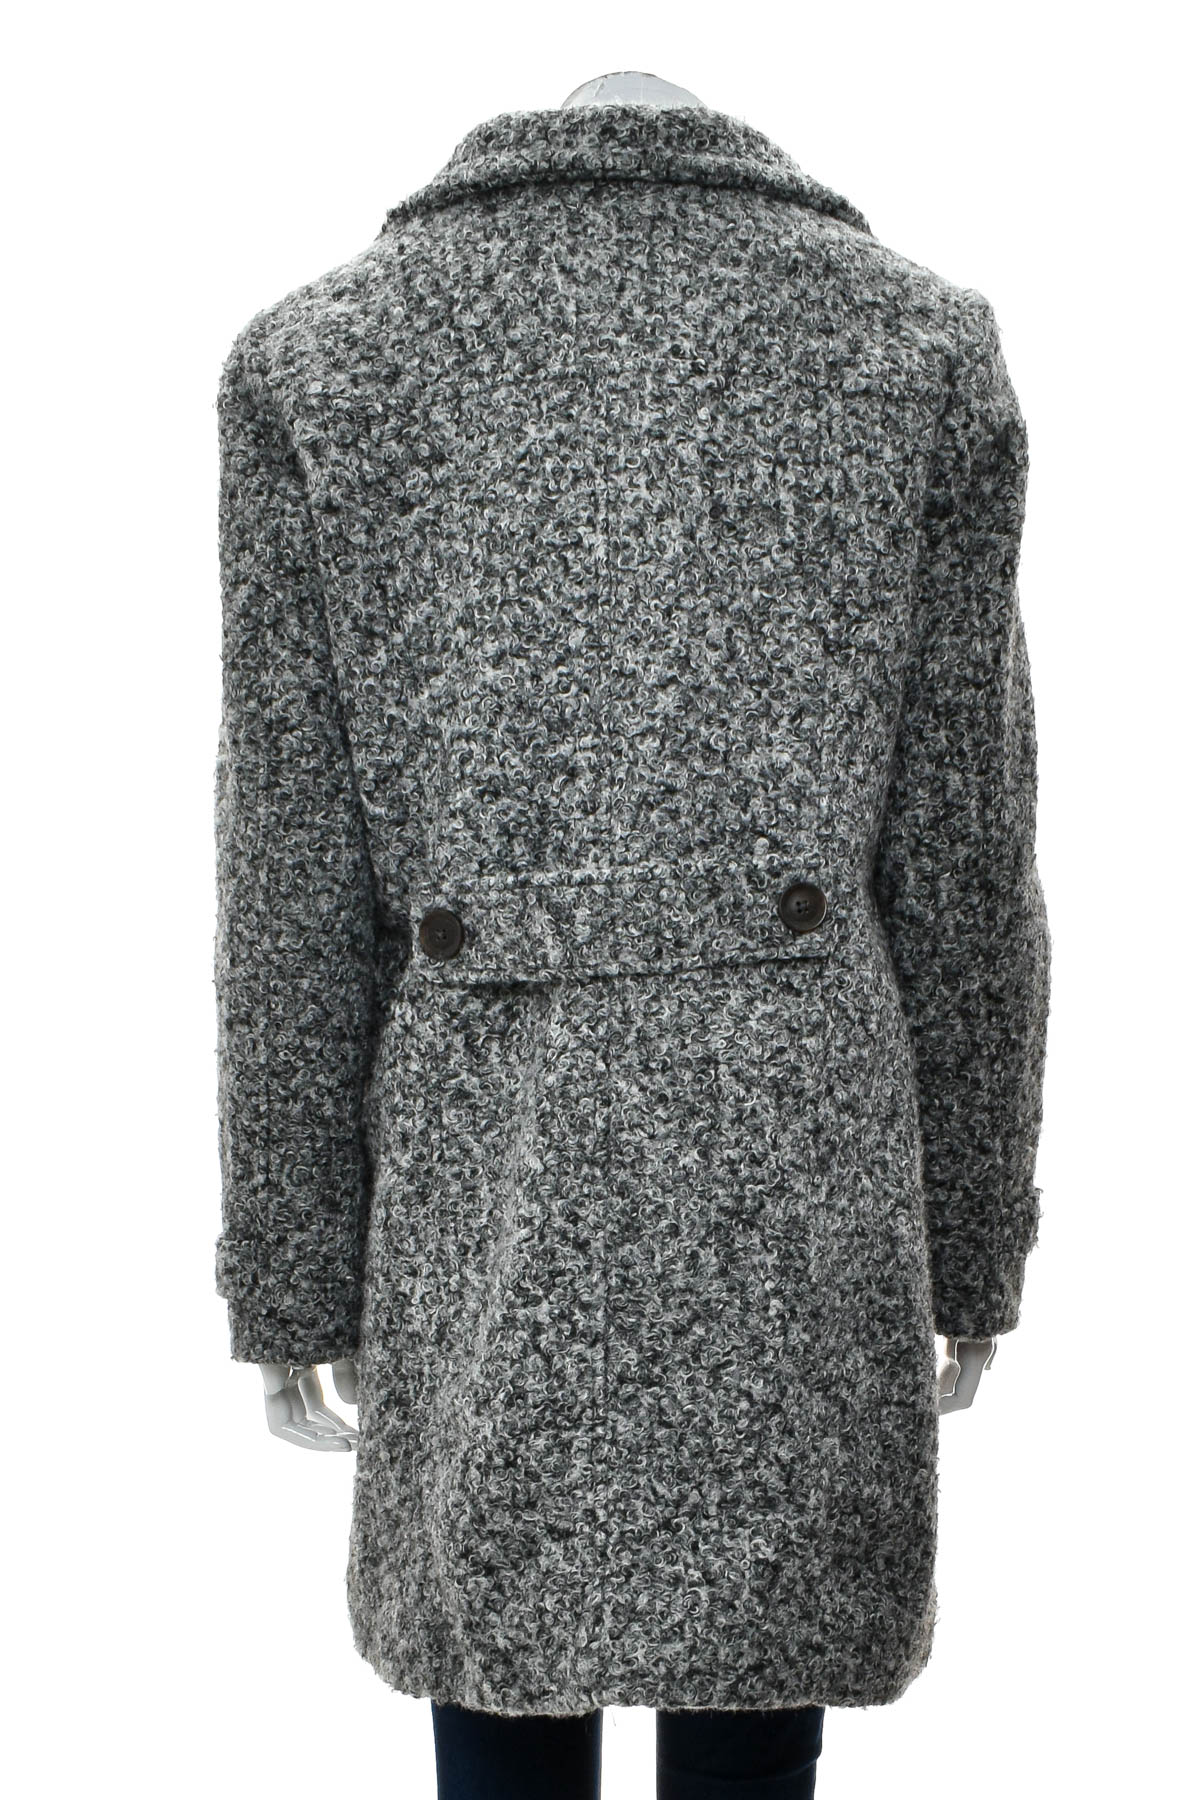 Γυναικείο παλτό - Jean Pascale - 1